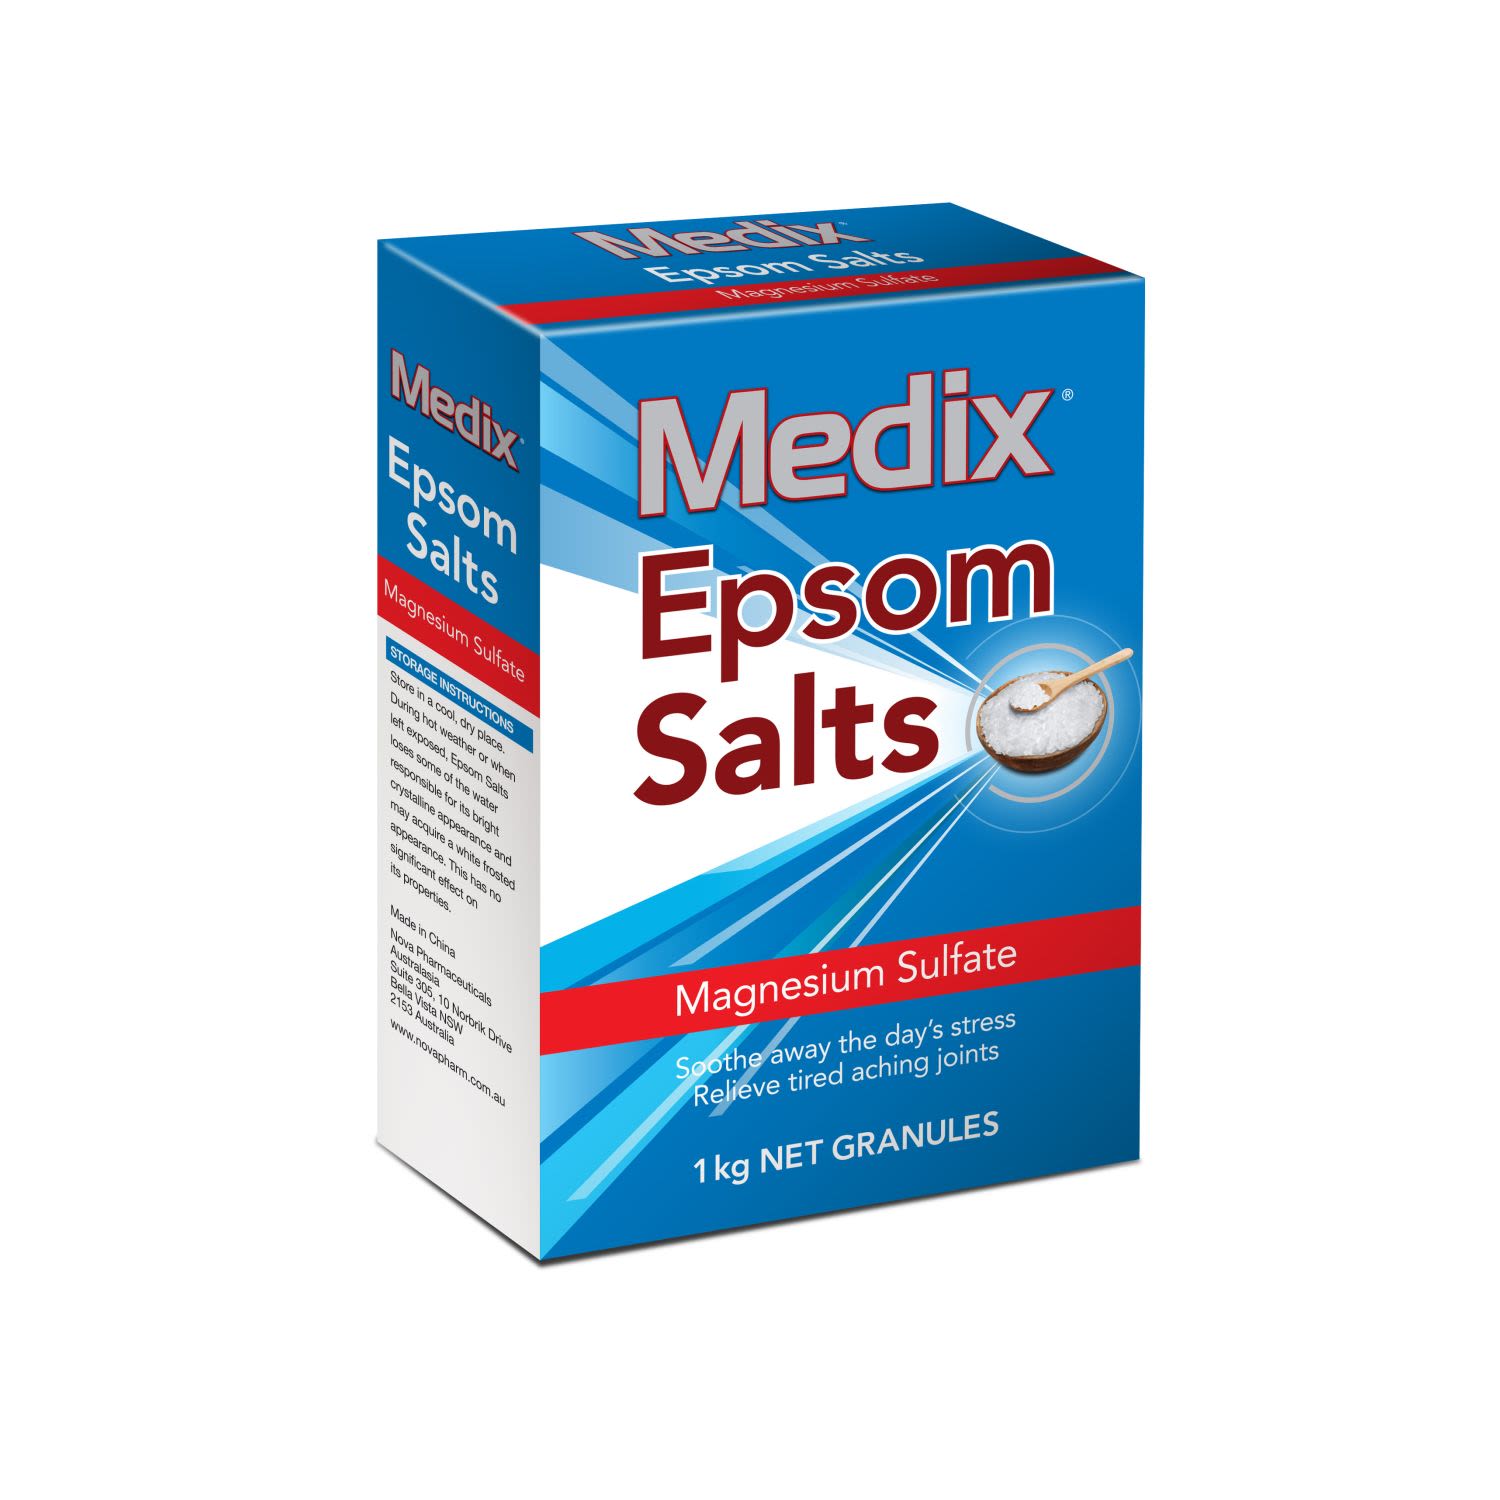 Medix Epsom Salts, 1 Kilogram